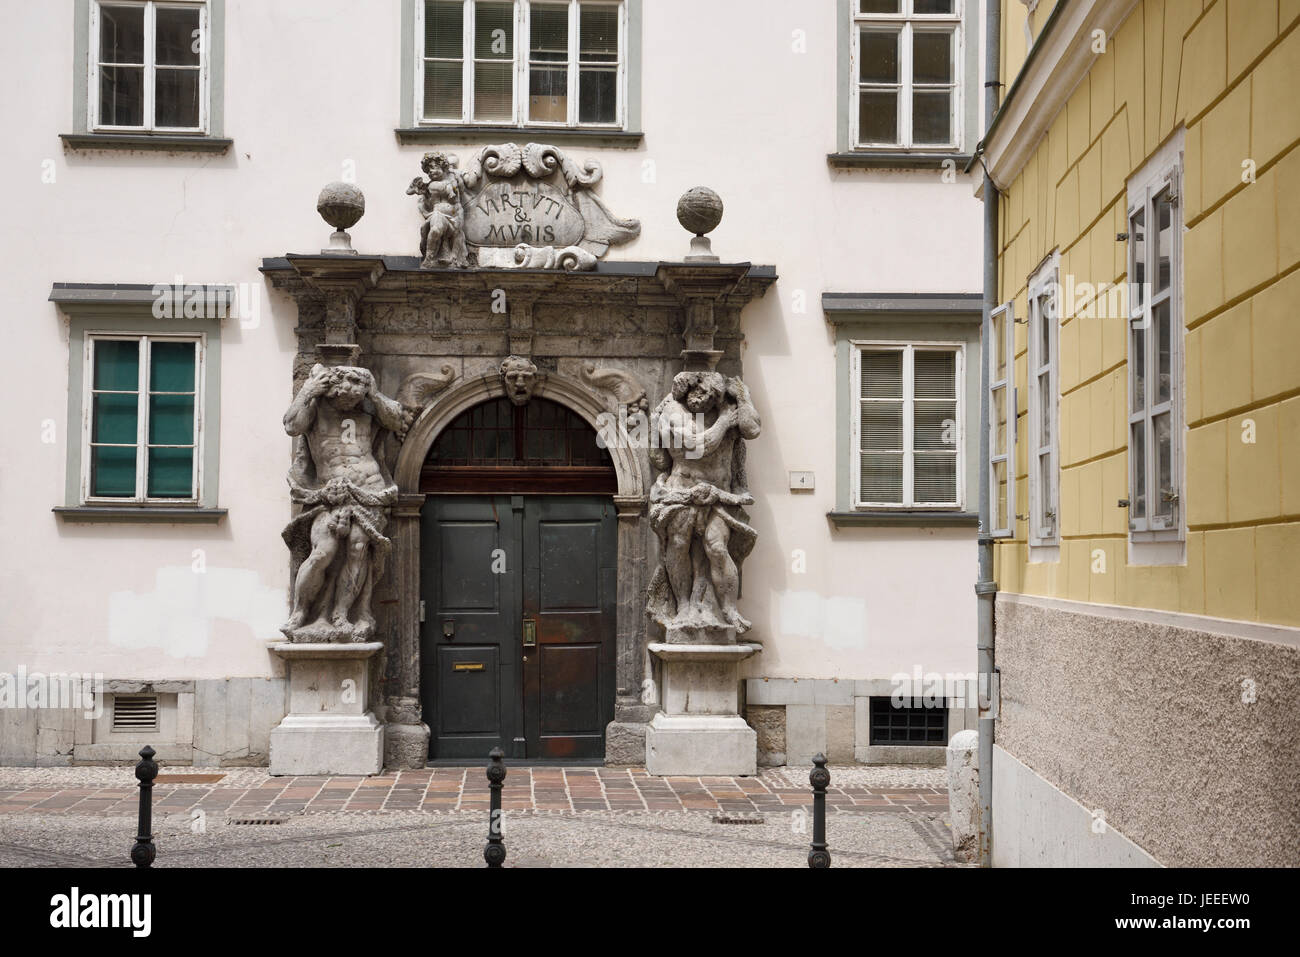 Eingang zum Ljubljana theologische Seminar Palast Bibliothek mit zwei Skulpturen von Atlas flankieren die Tür mit Motto Virtuti & Musis Slowenien Stockfoto